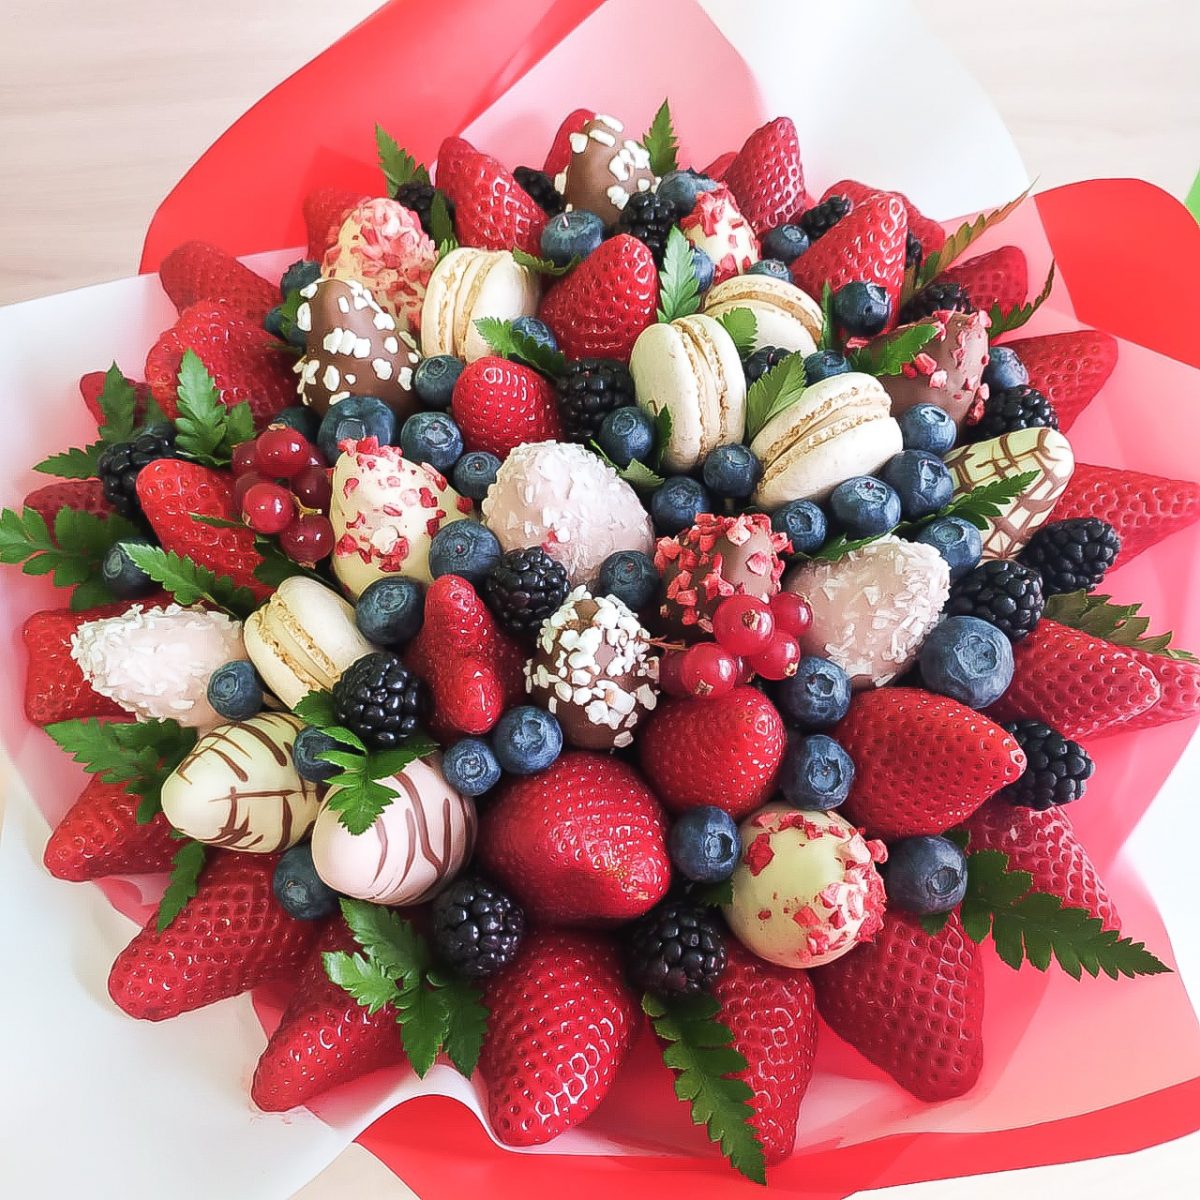 Купить сладкий букет из ягод в коробке по доступной цене с доставкой вМоскве и области в интернет-магазине Город Букетов